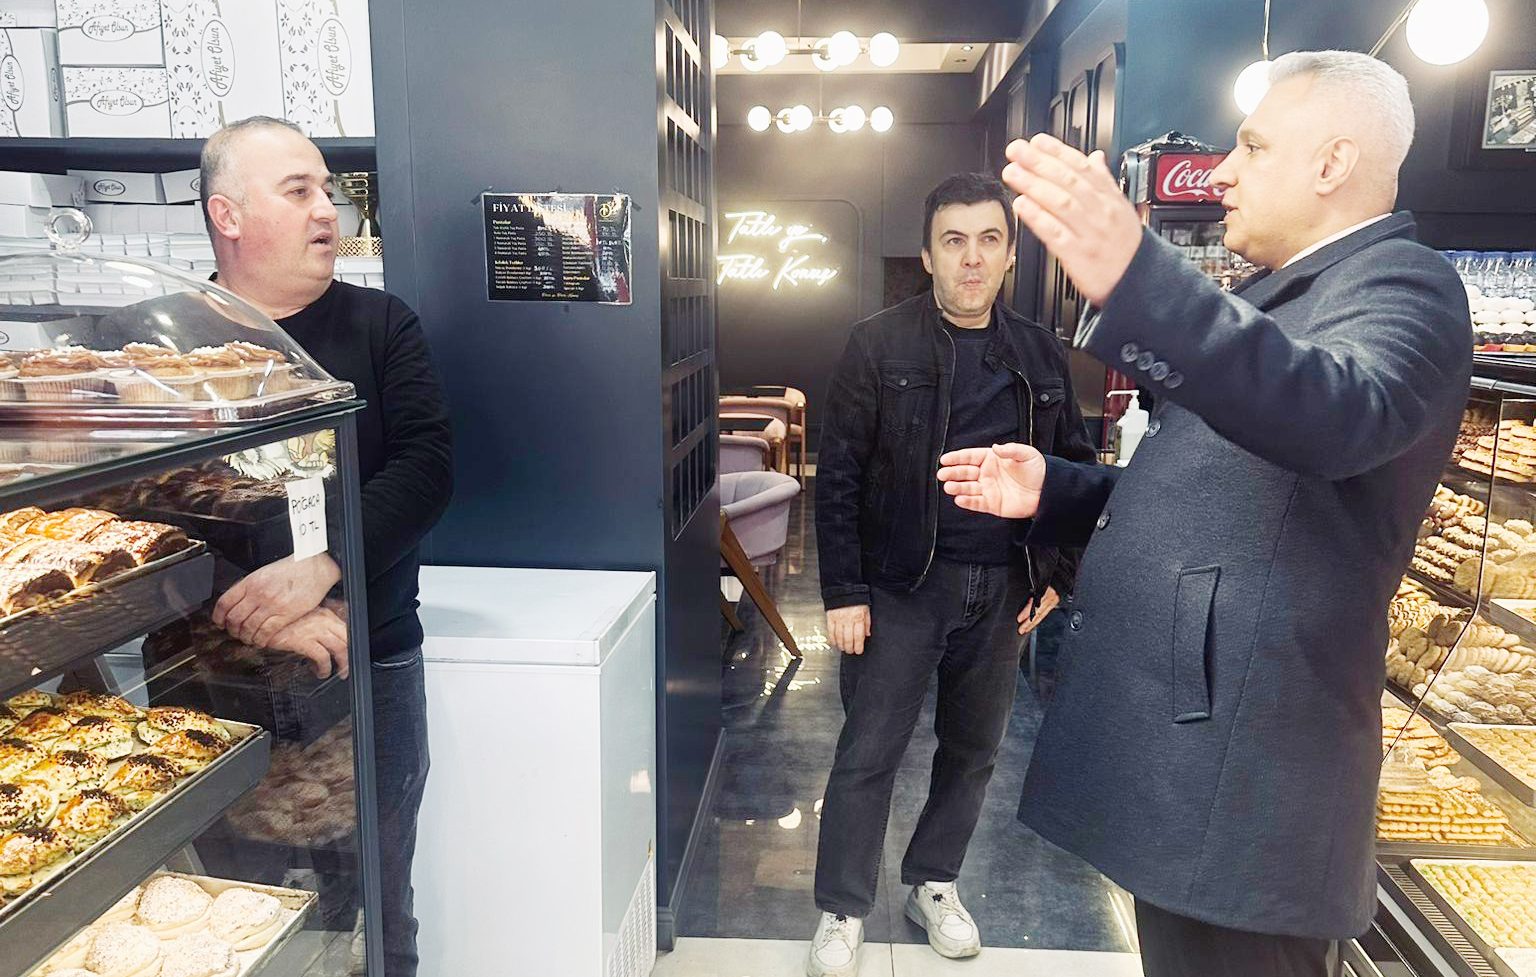 DEVA Partisi Yozgat Belediye Başkan Adayı Mesut Yıldırım: “Yozgat halkı değişim istiyor”